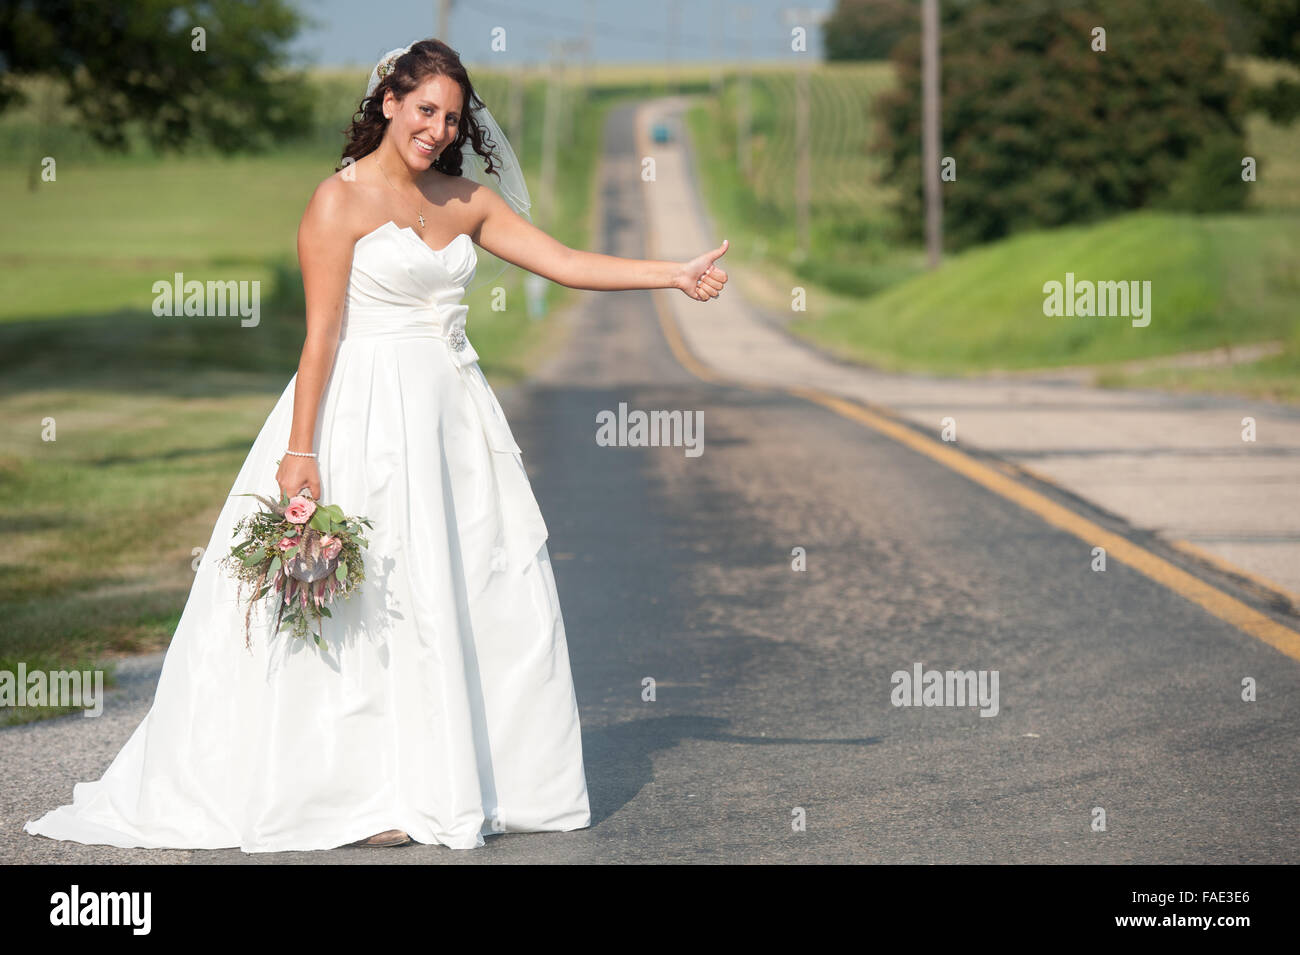 Mariée l'attelage d'une ride dans sa robe de mariage Banque D'Images